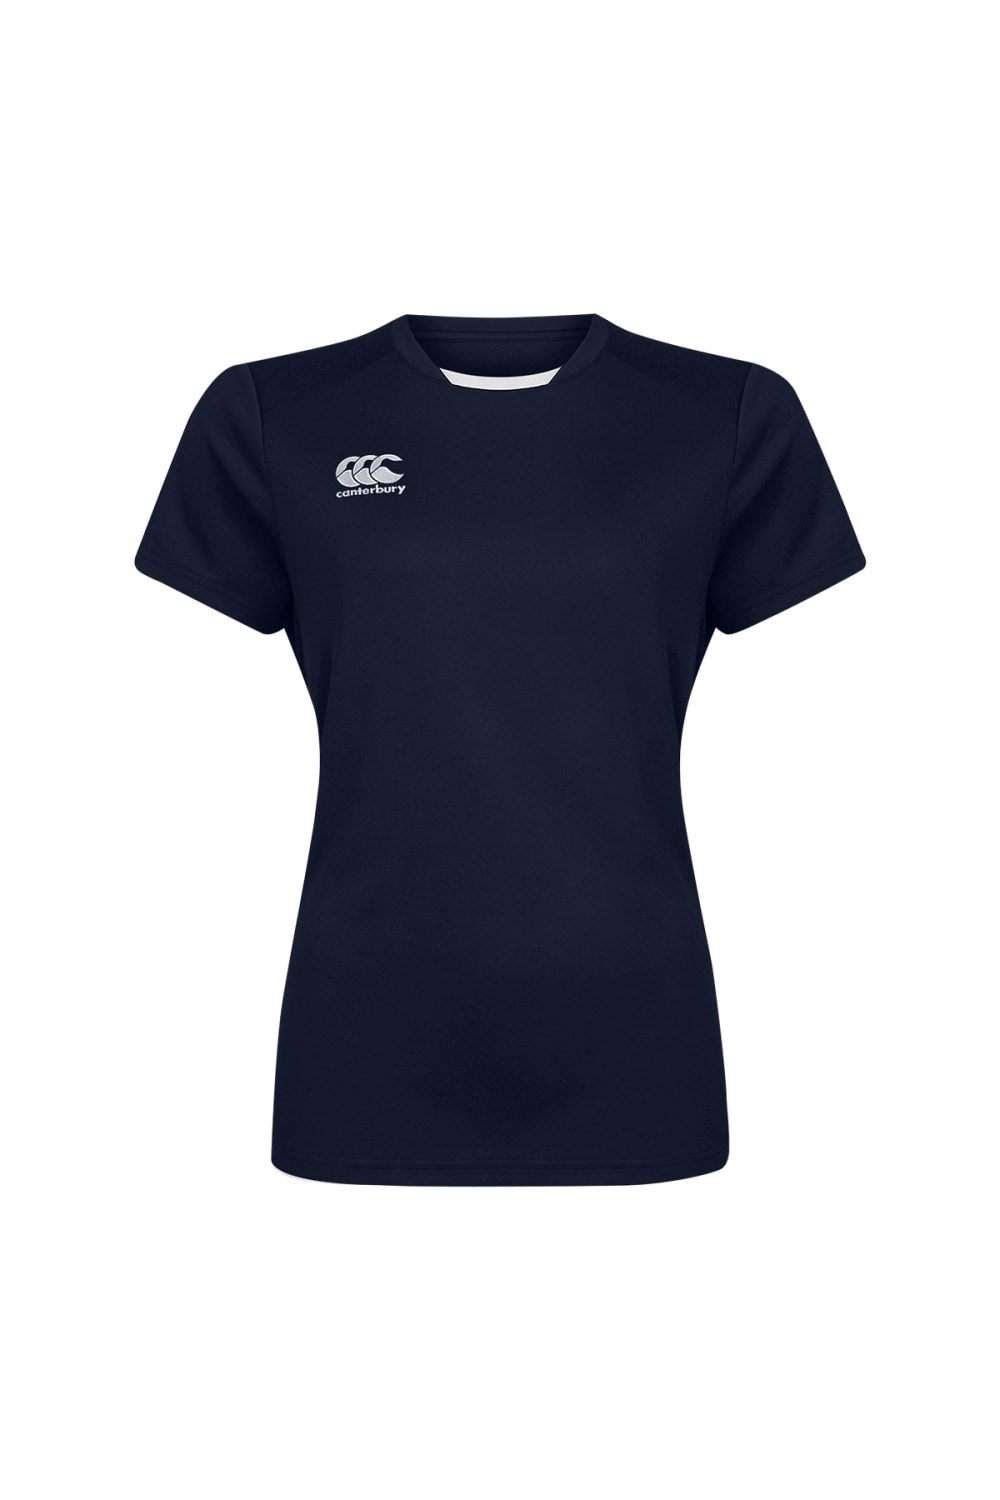 Club Dry Womens T-shirt -